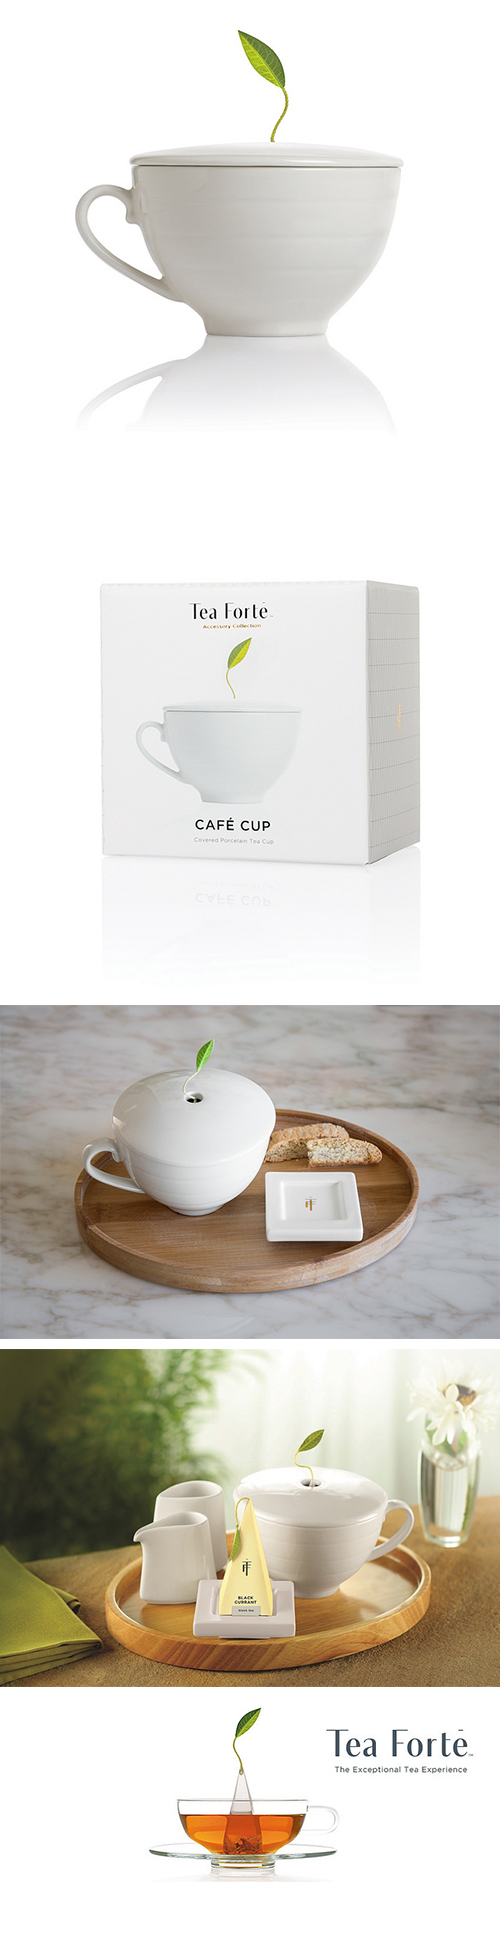 Tea Forte 白瓷咖啡杯